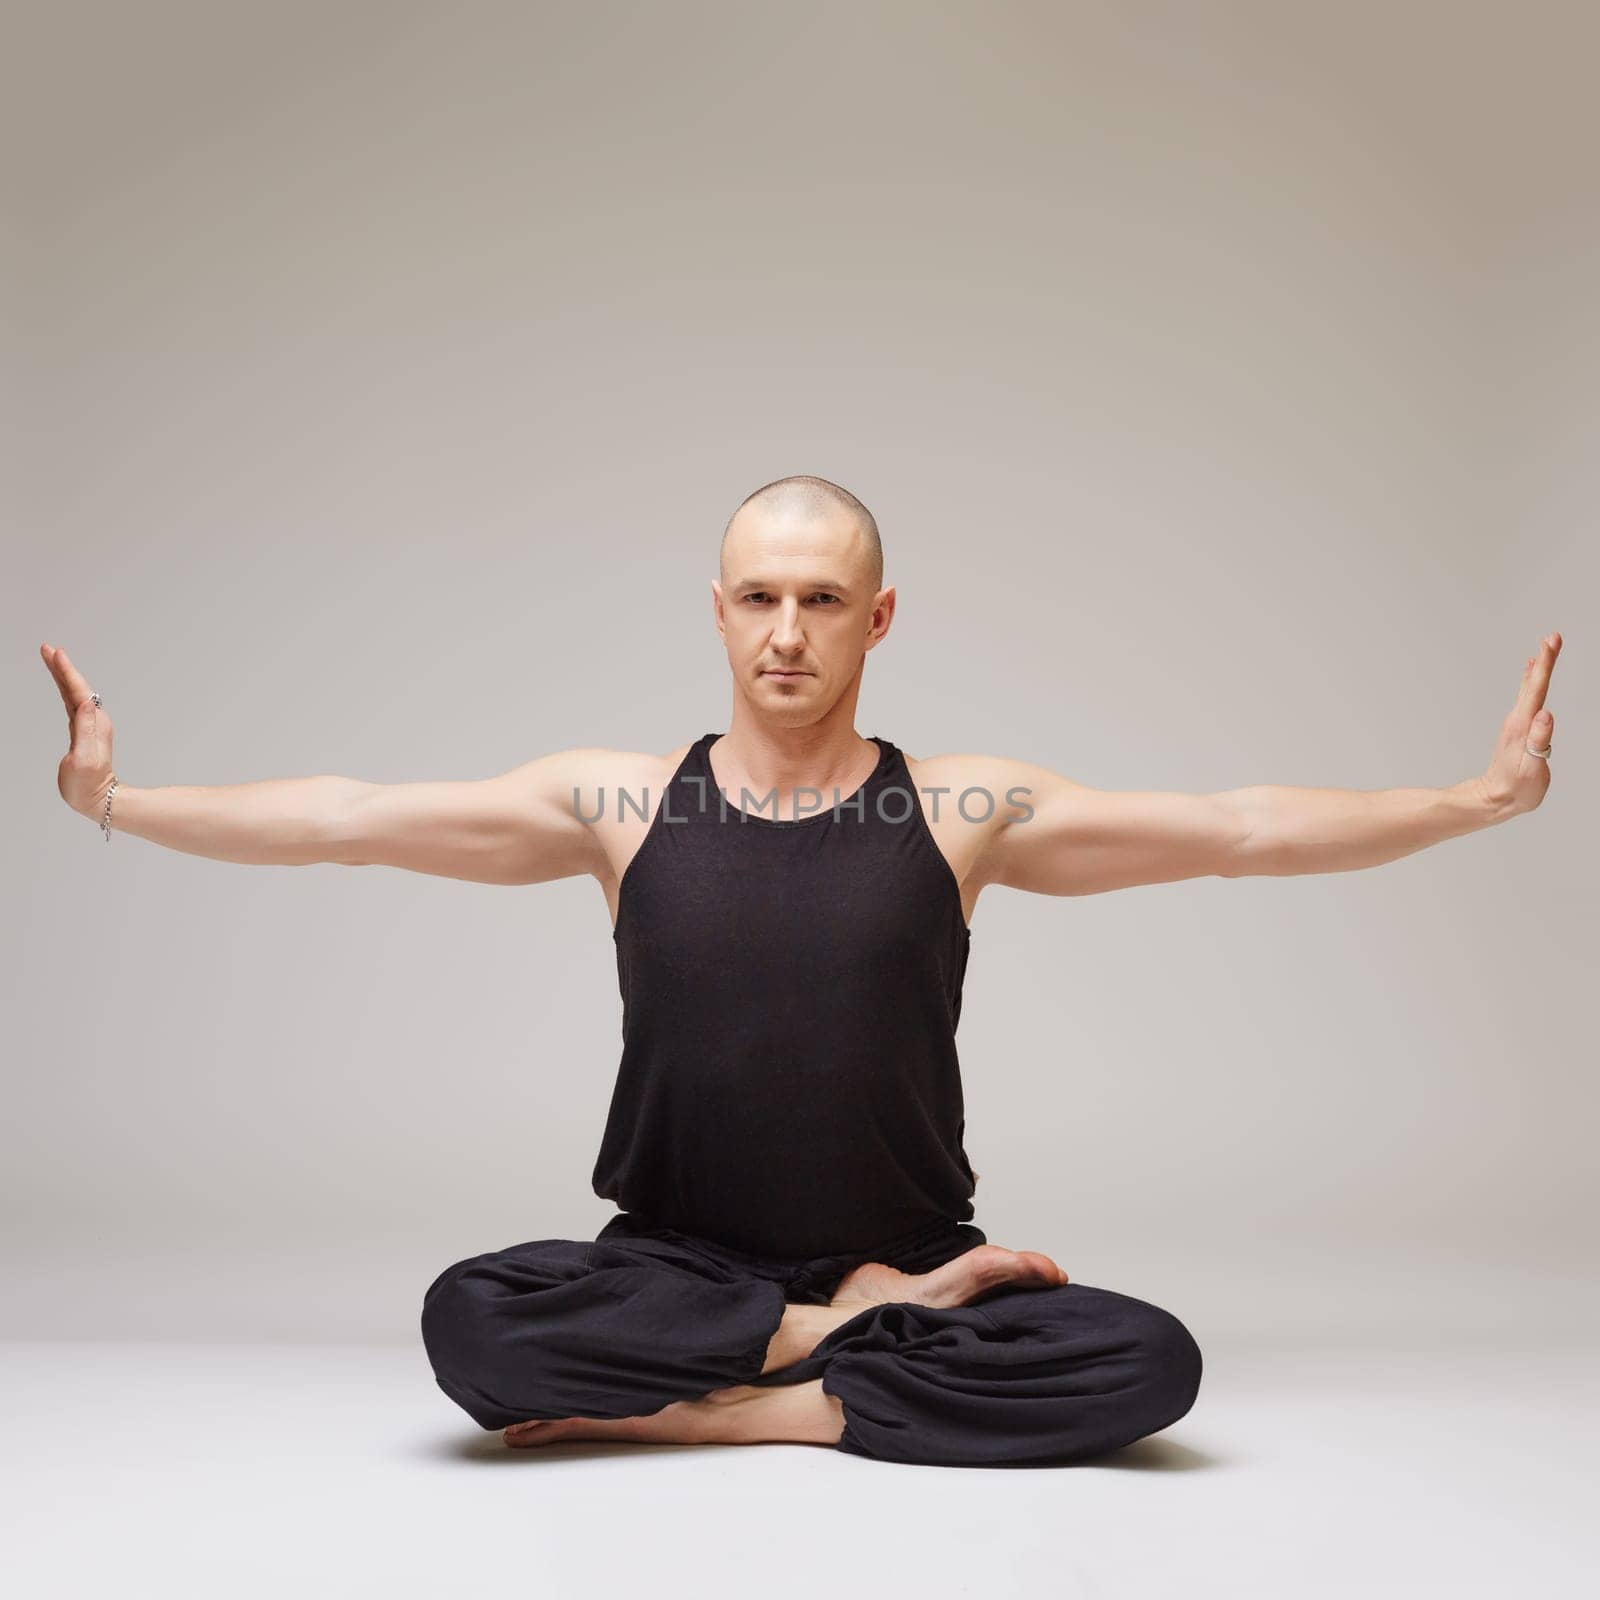 Attractive yoga master posing at camera while exercising